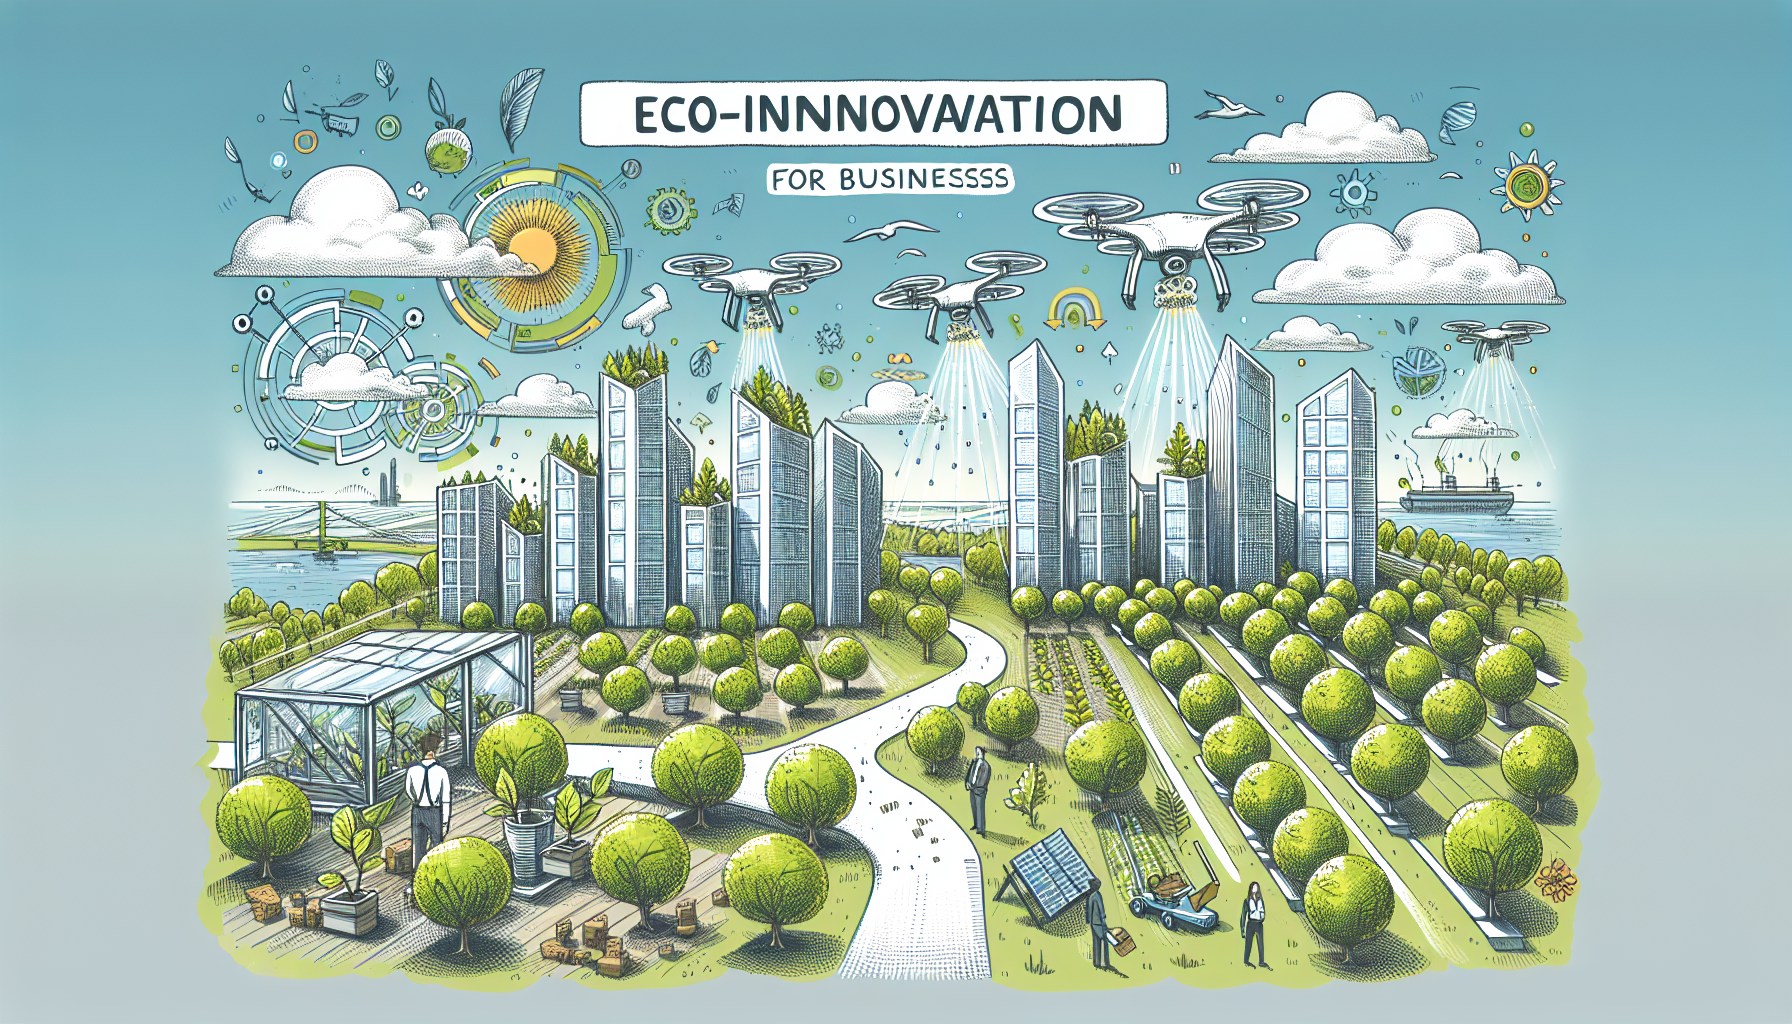 découvrez comment l'éco-innovation révolutionne notre approche des affaires et influence positivement notre monde.